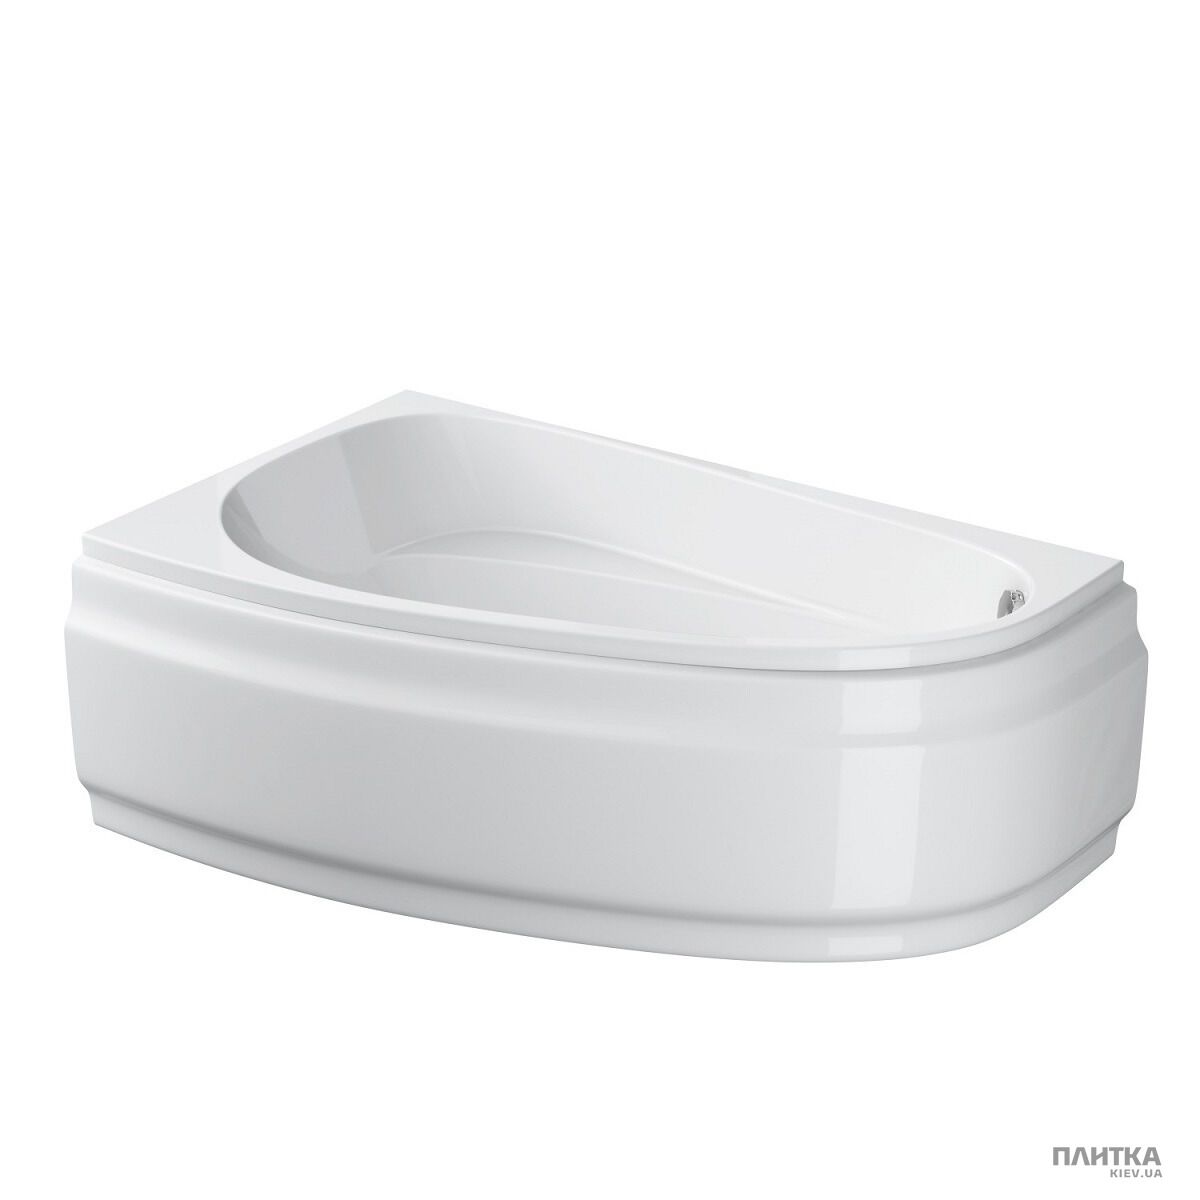 Акриловая ванна Cersanit Joanna New 160x95 см левая, асимметричная белый